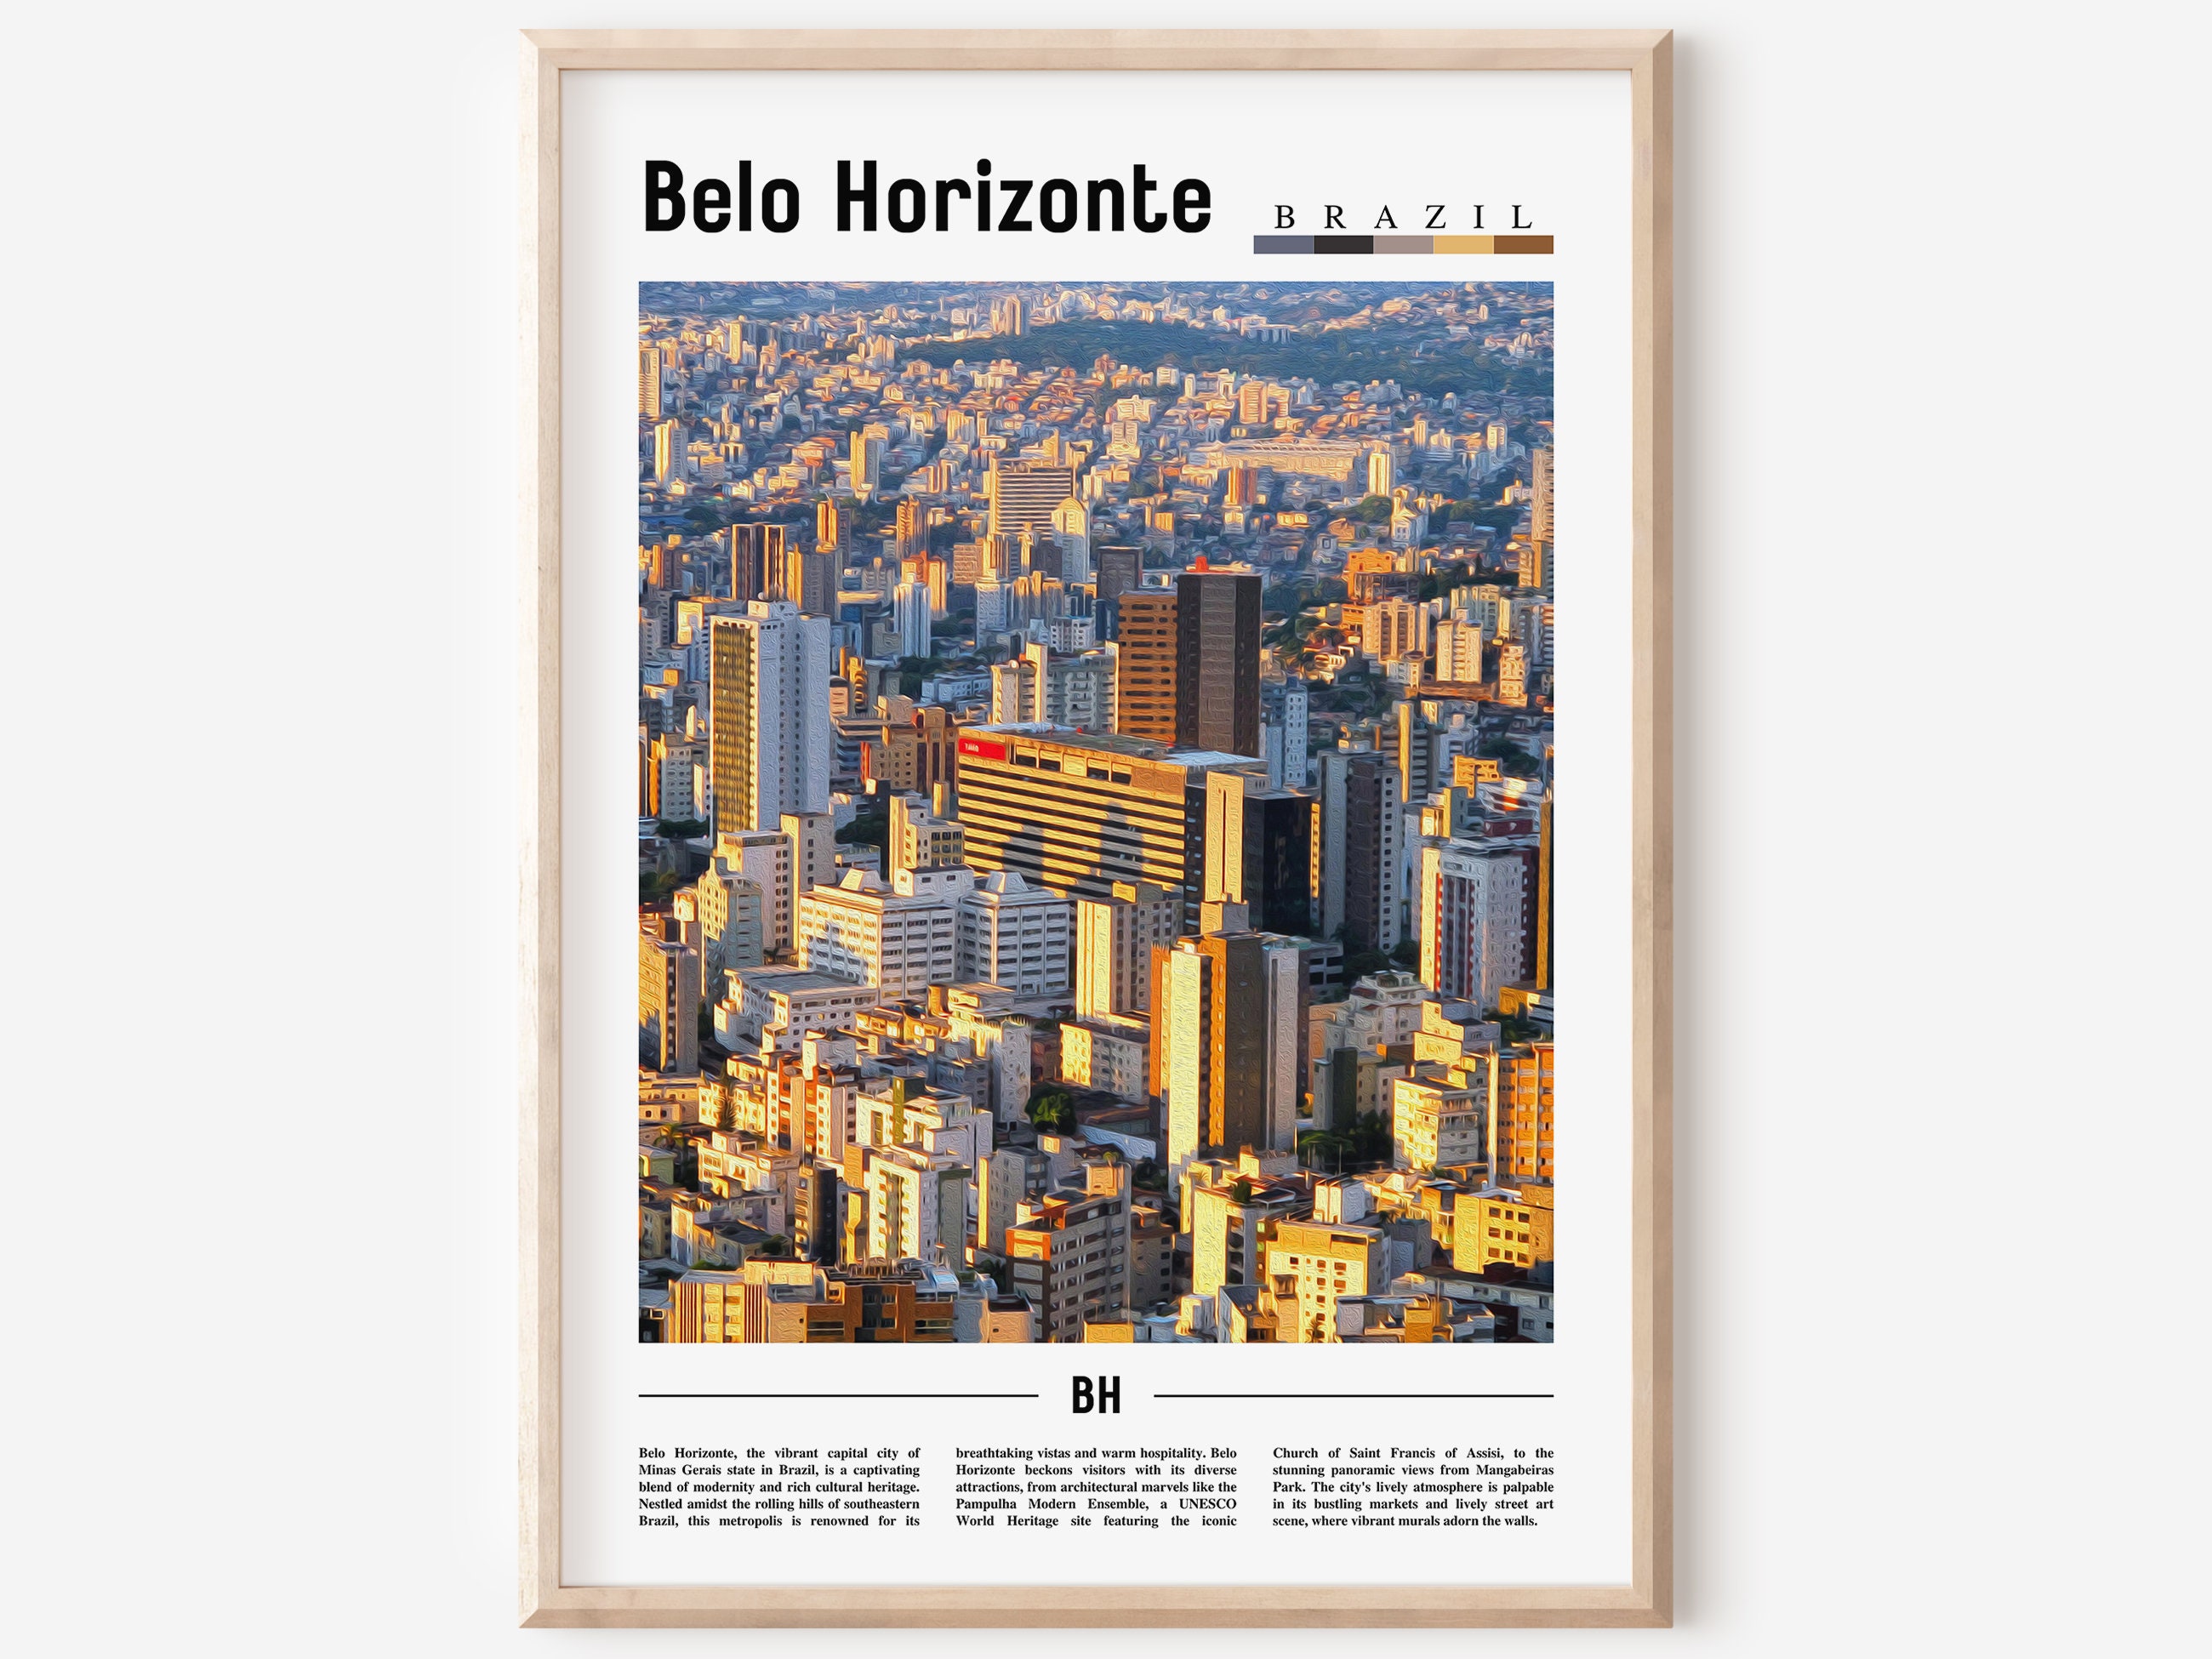 BH GAMES - A Mais Completa Loja de Games de Belo Horizonte - Tales